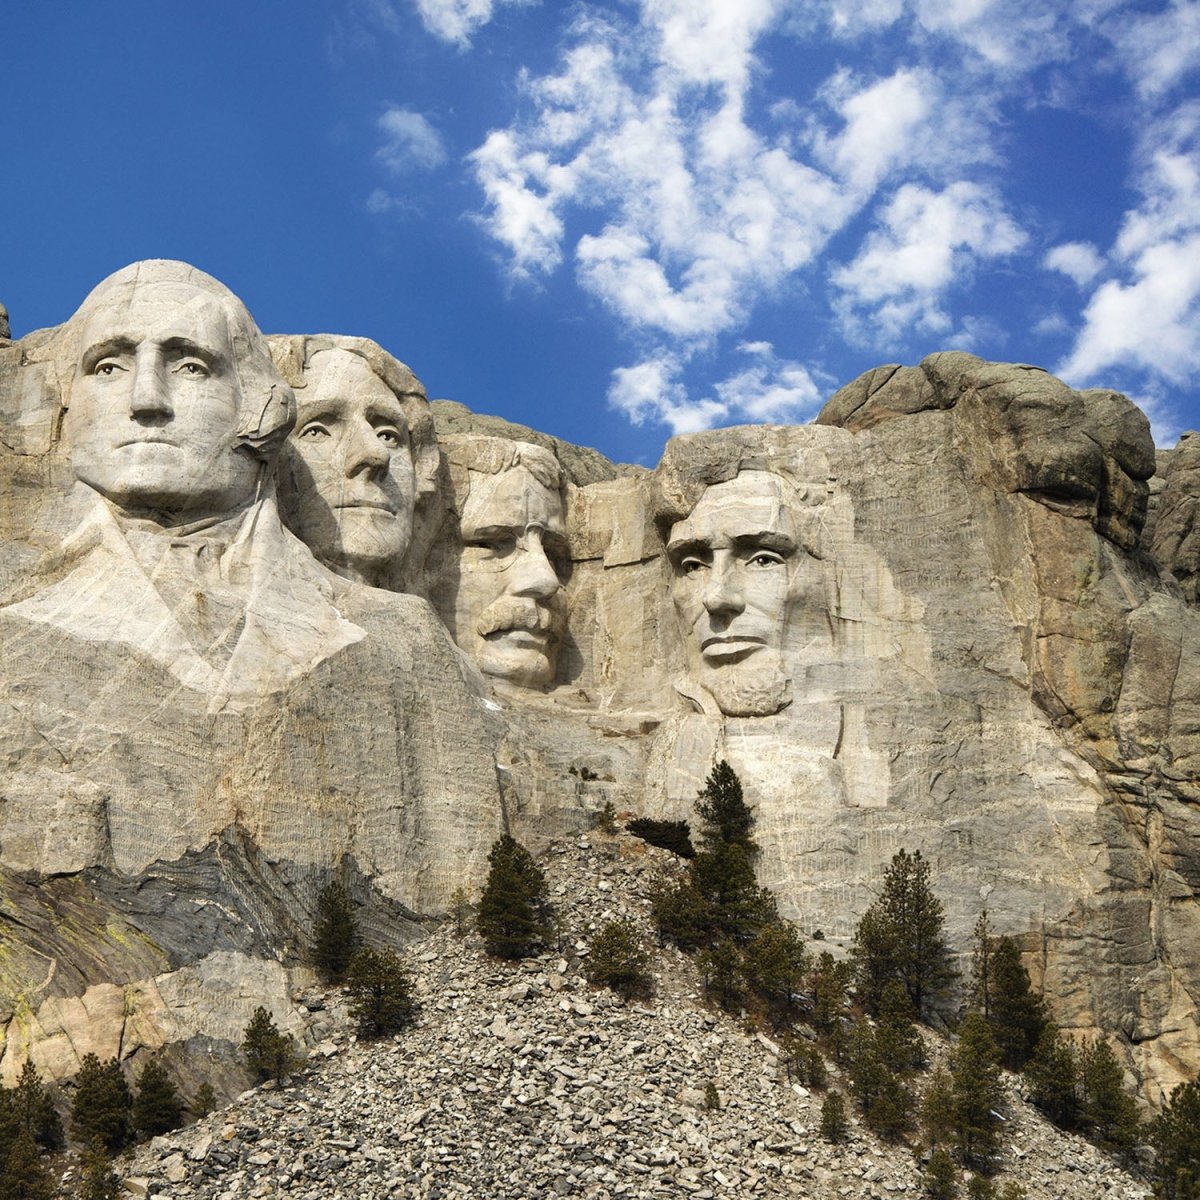 Beistelltisch Mount Rushmore Amerika M0250 entdecken - Bild 2